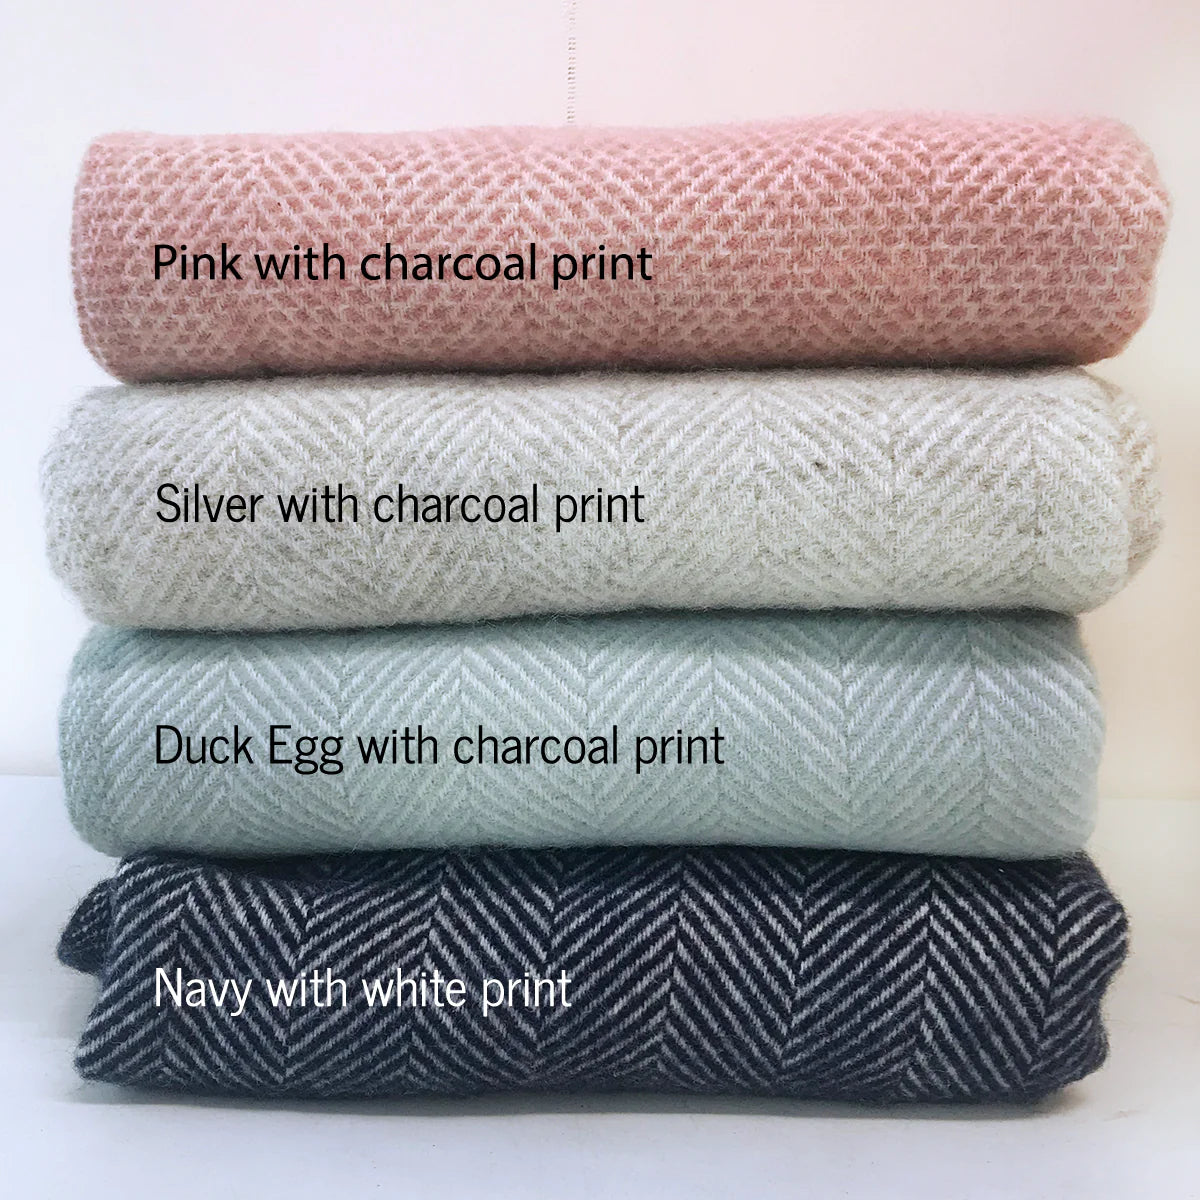 Personalised Wool Blanket in Pink